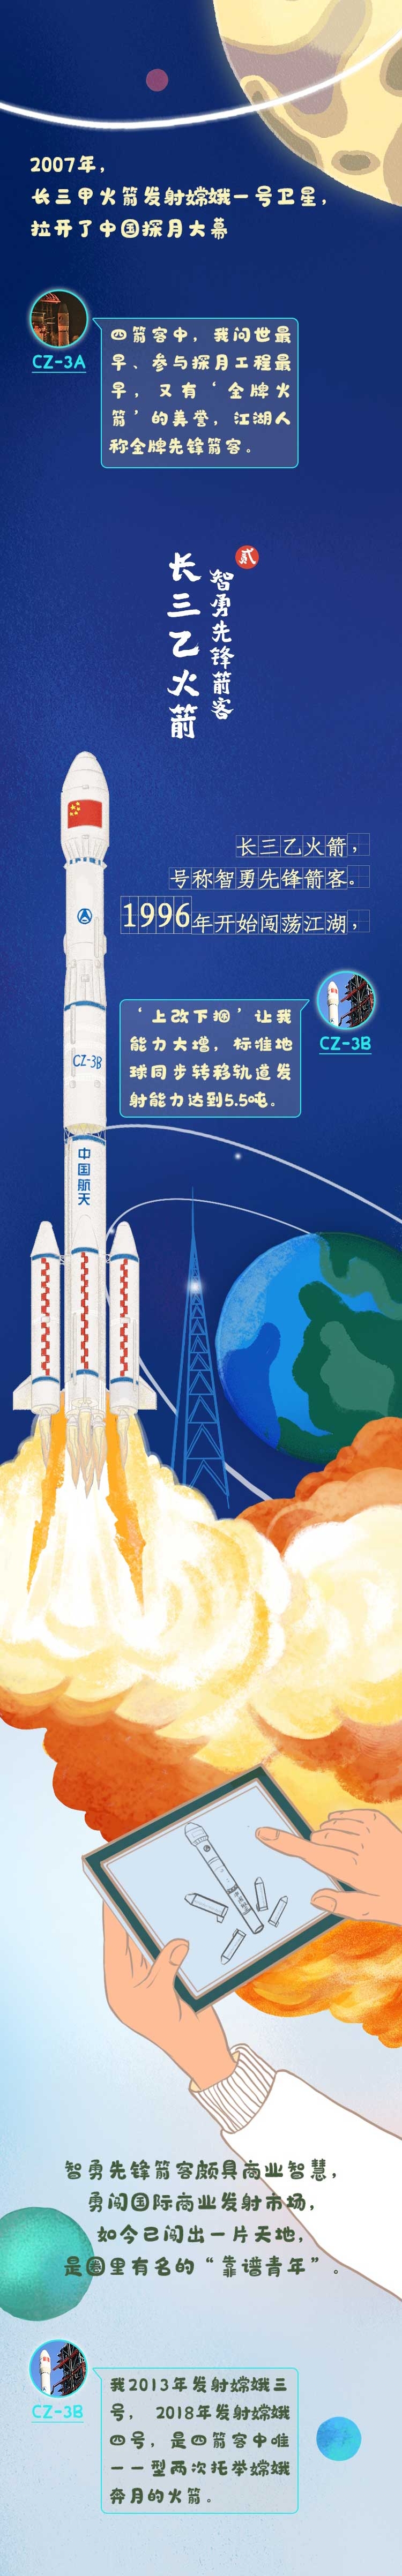 中国探月四箭客:16年6次发射,成功率100%!